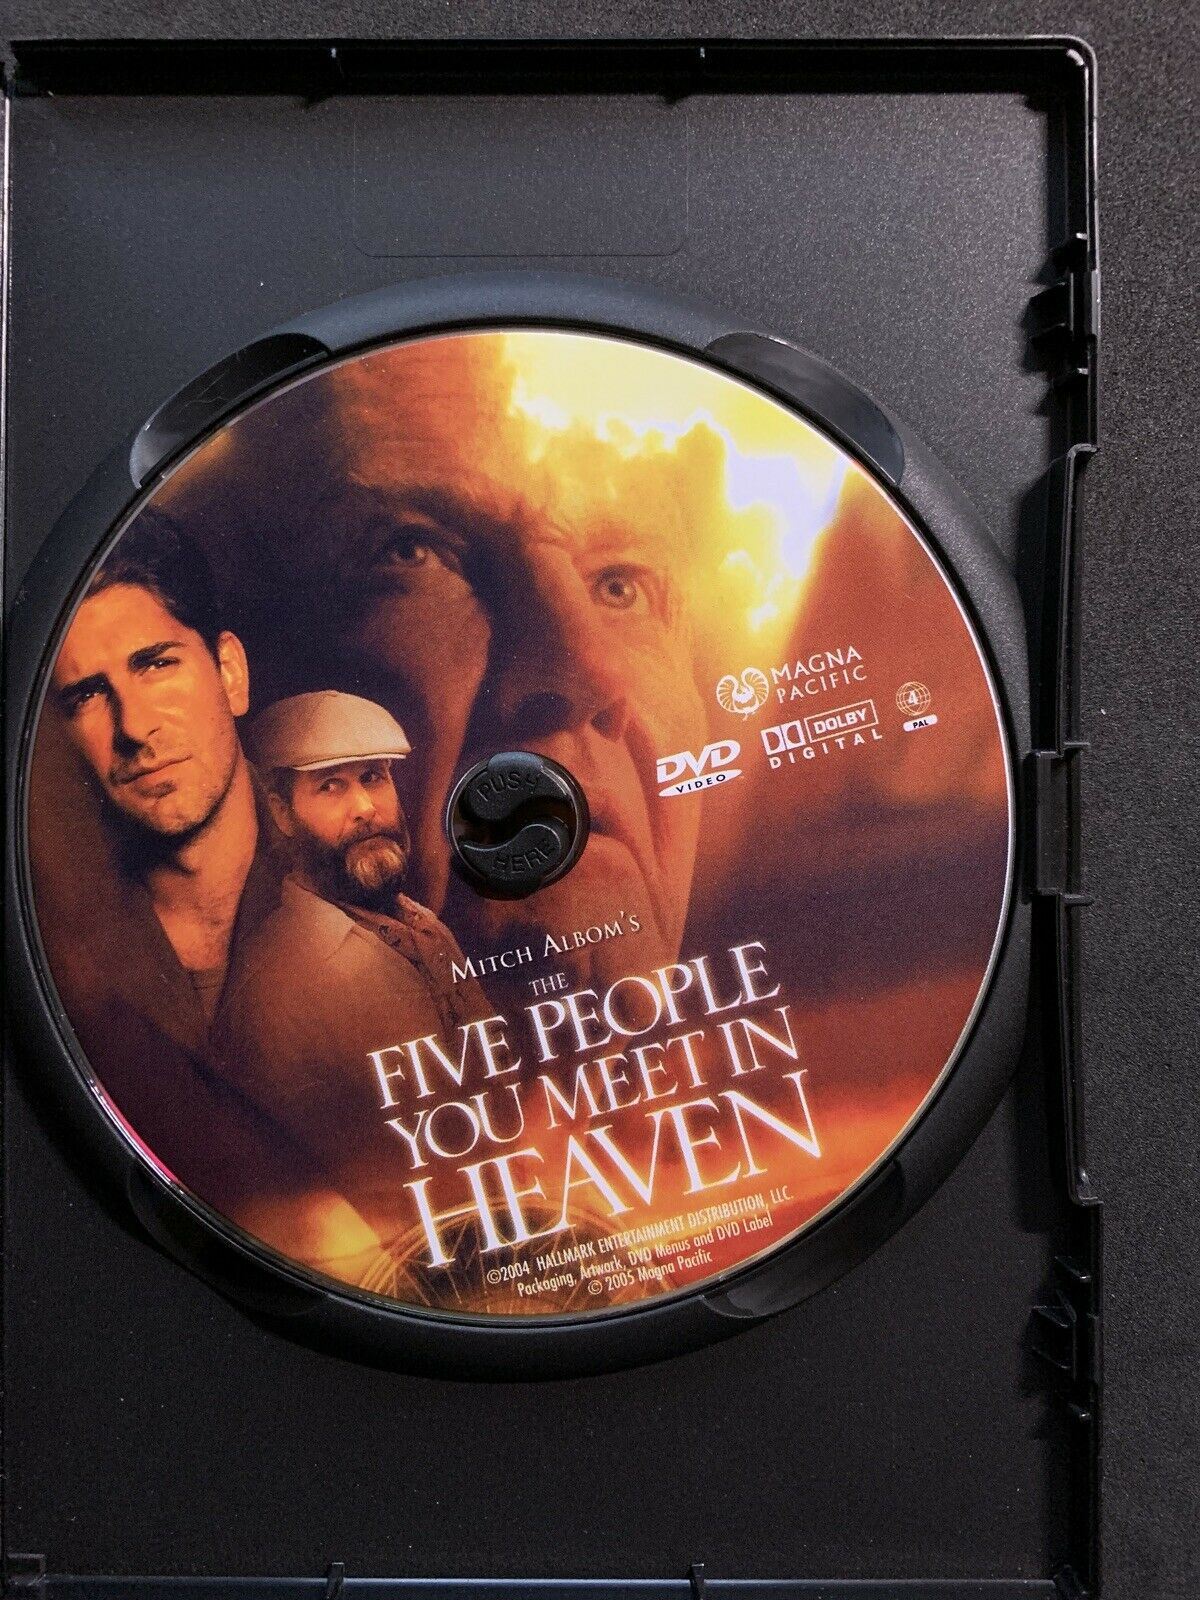 The Five People You Meet In Heaven (DVD, 2004) Region 4